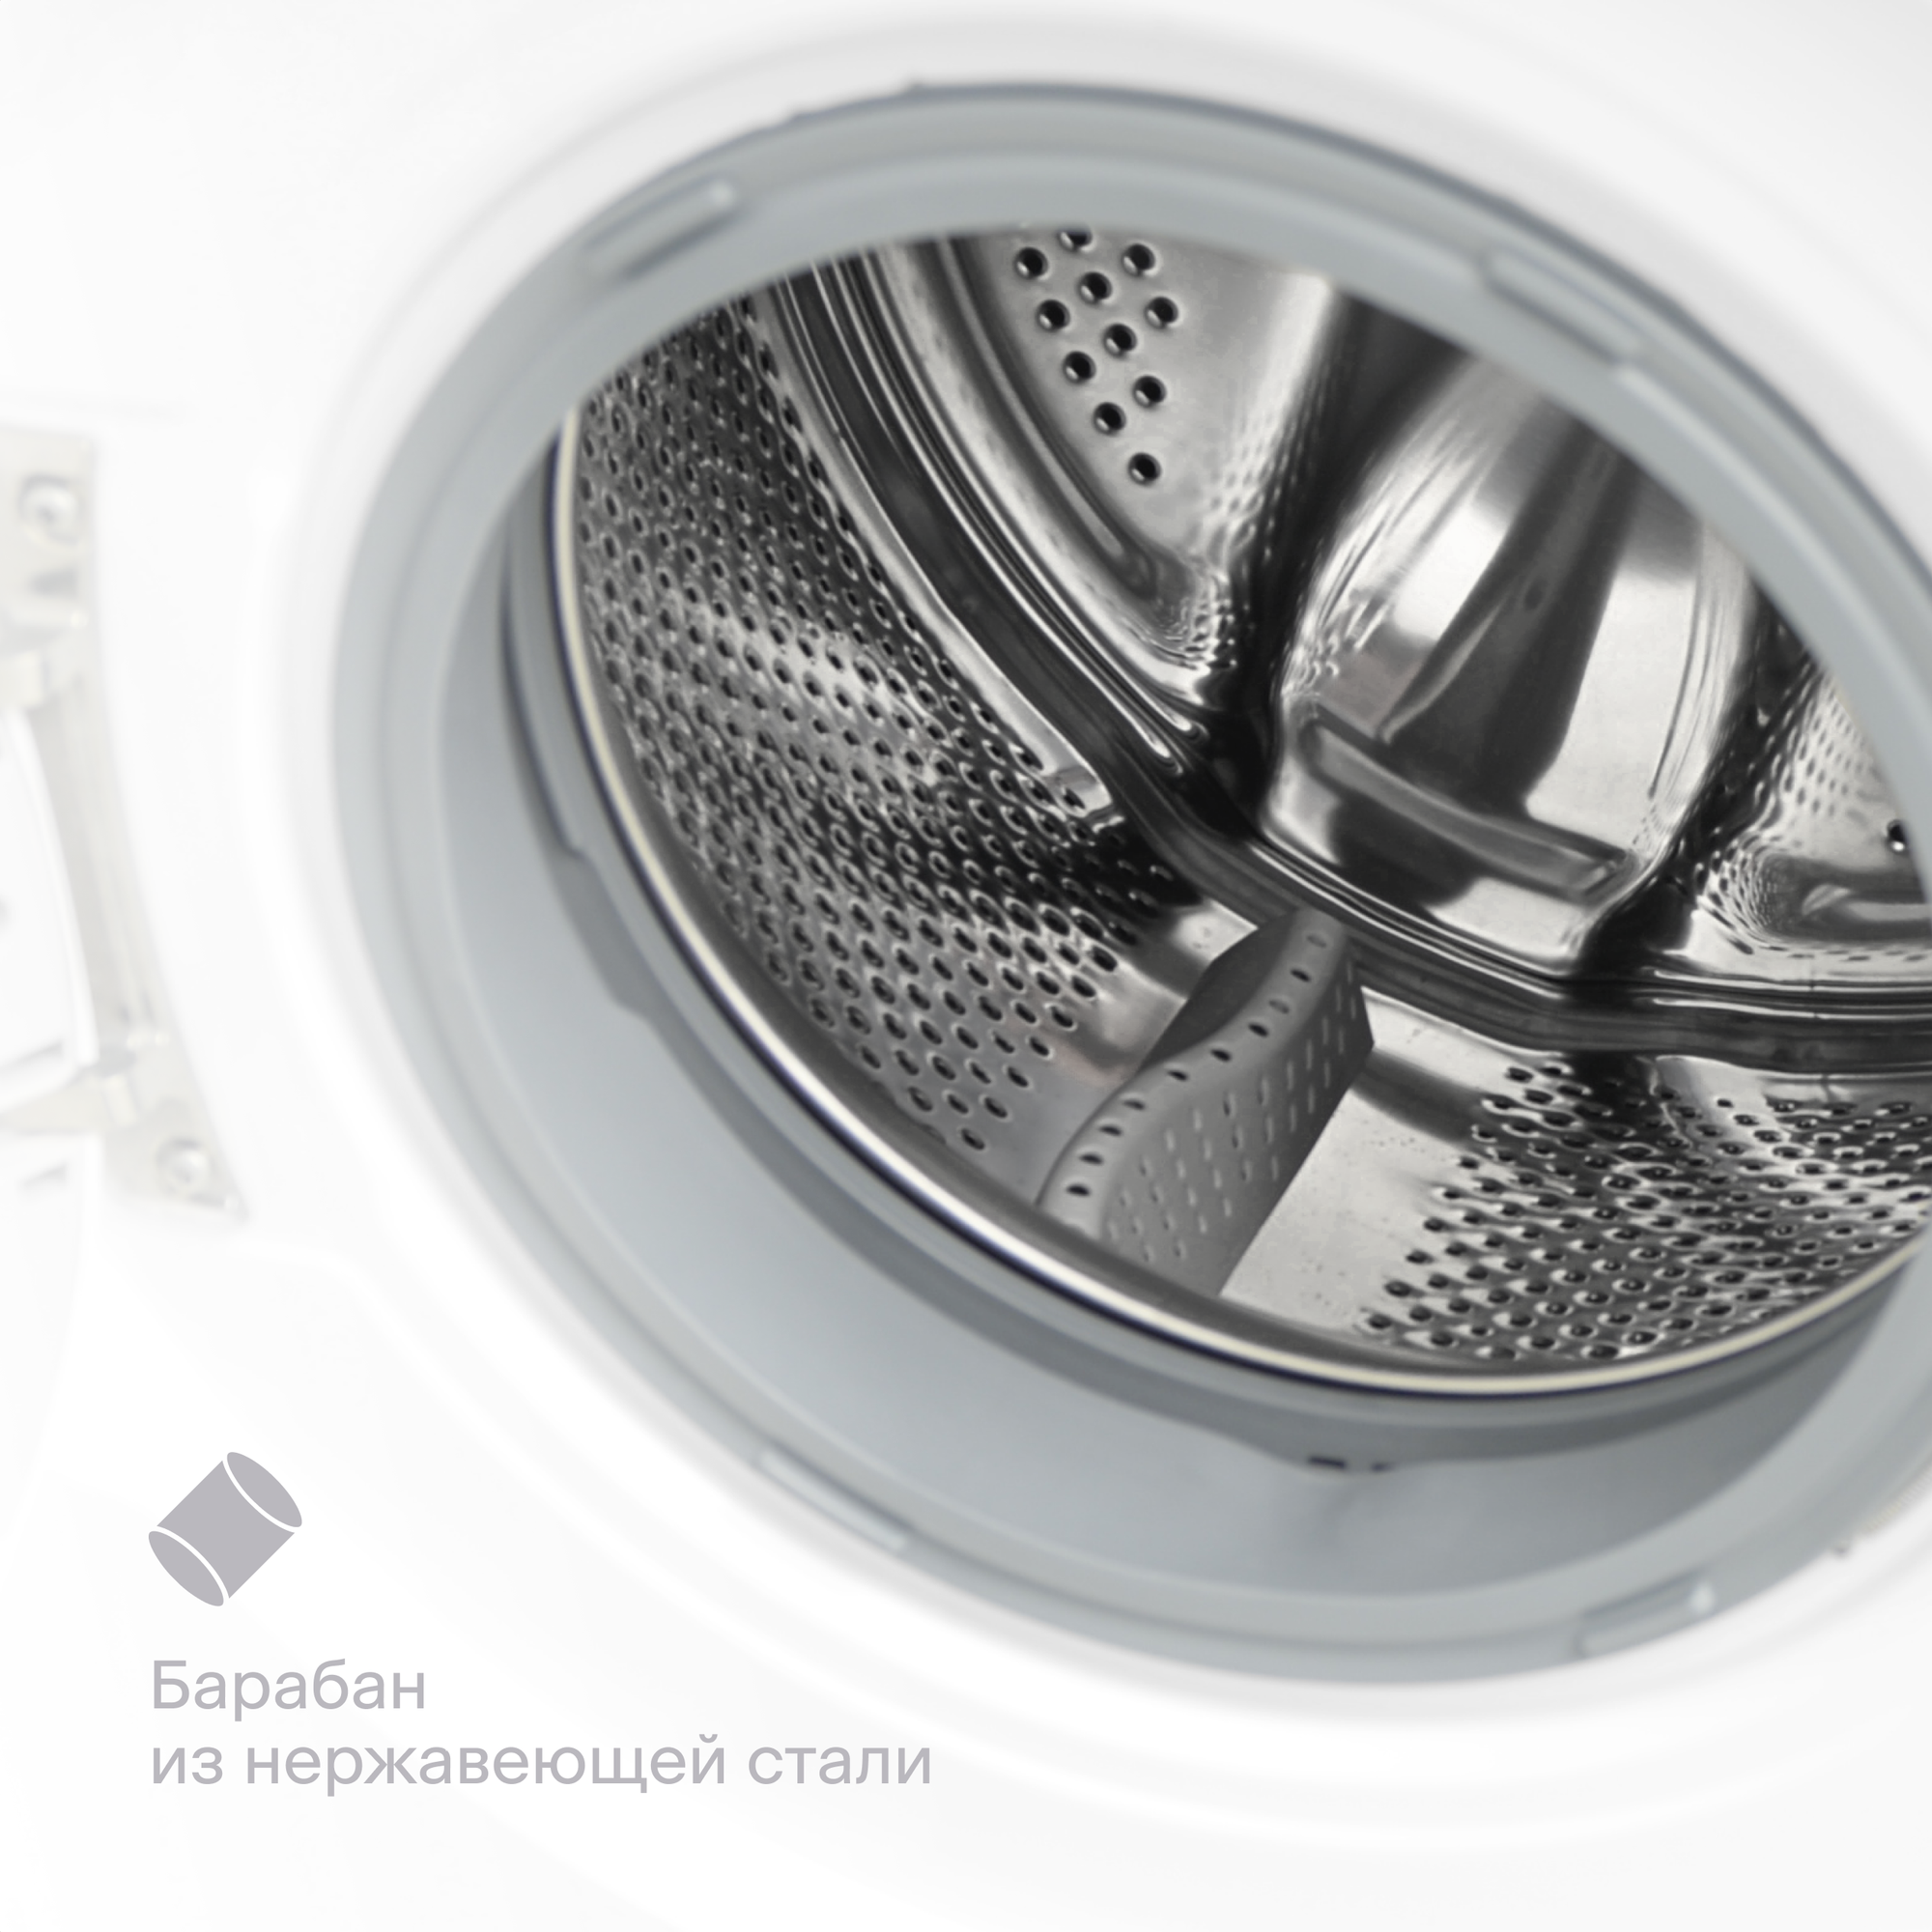 Встраиваемая стиральная машина Tuvio WBF76MW21, белый